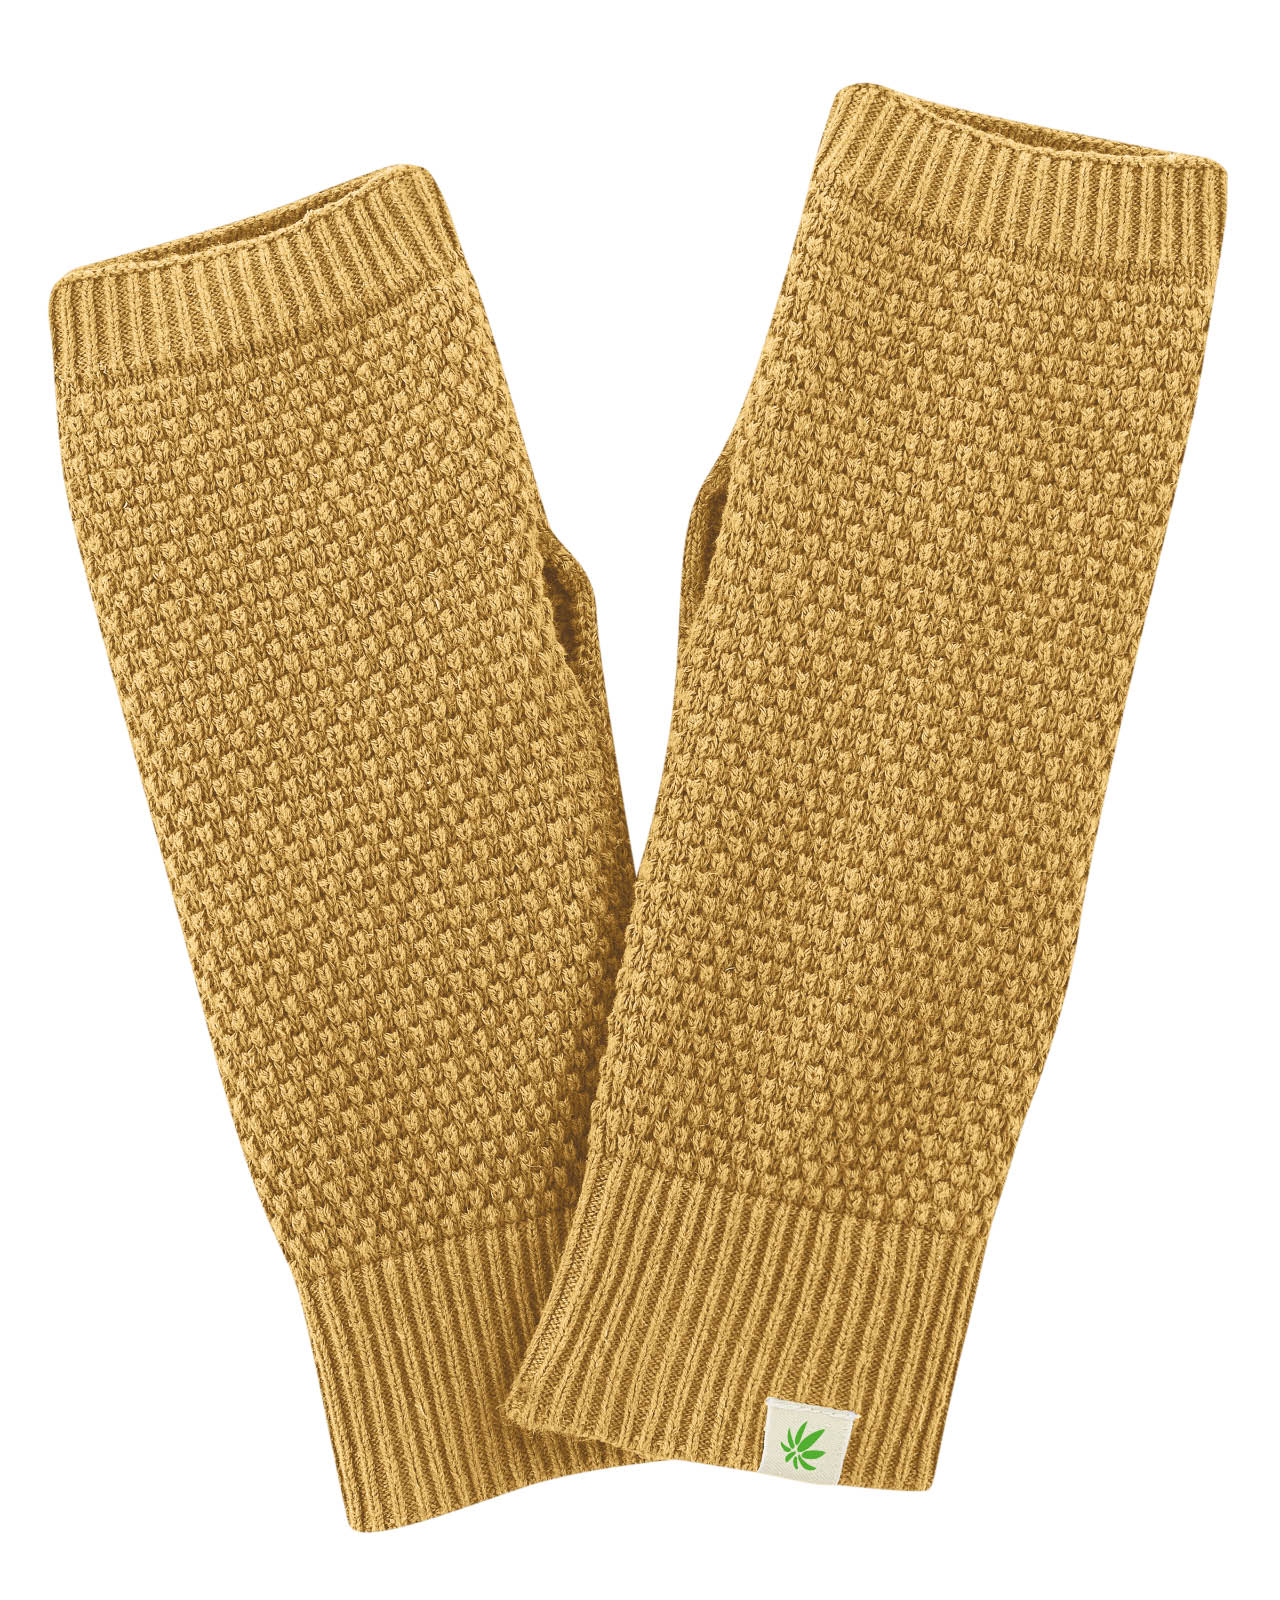 gants-coton-bio_LZ413_a_dijon